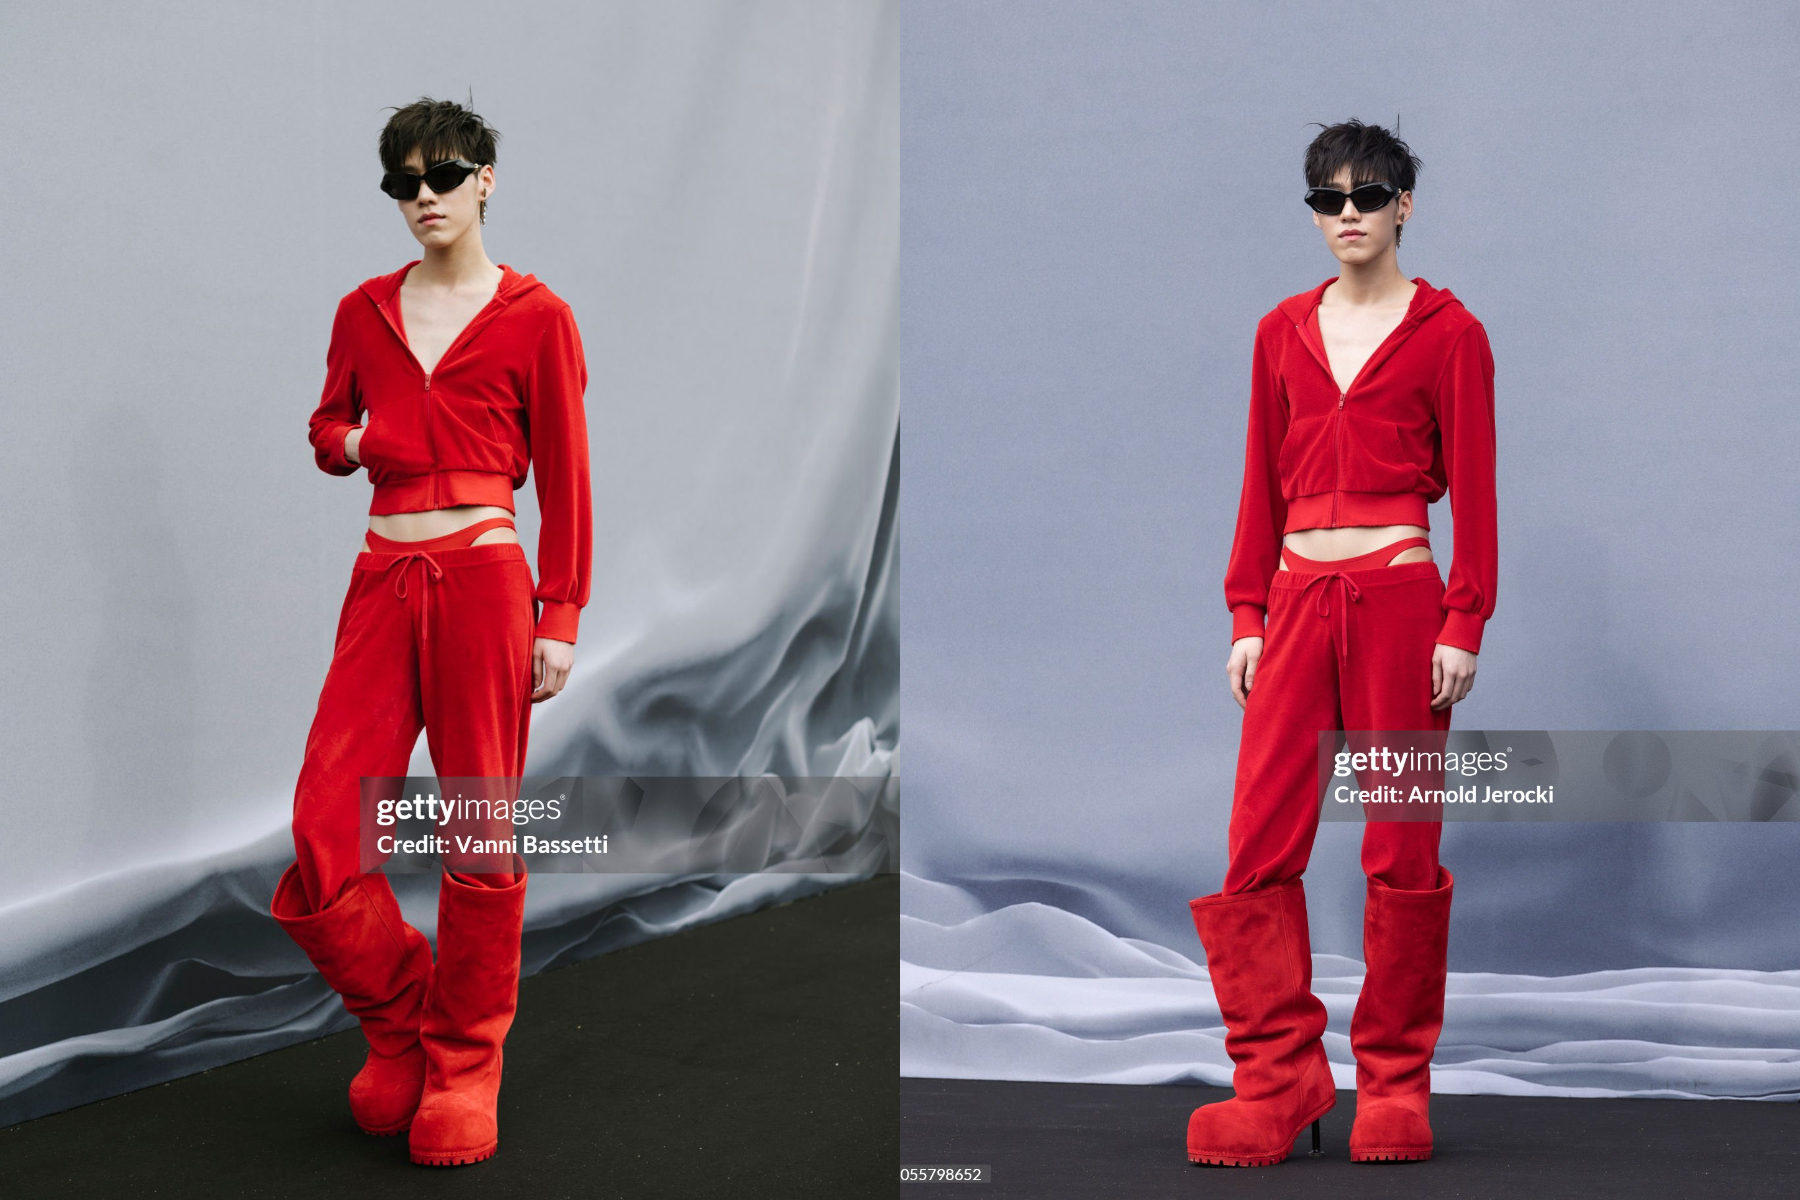 Dàn sao Thái qua “ống kính hung thần” Getty Images ở Paris Fashion Week: Lisa thần thái ngút ngàn, Baifern - Mai Davika và các mỹ nhân khác thì sao? - Ảnh 21.